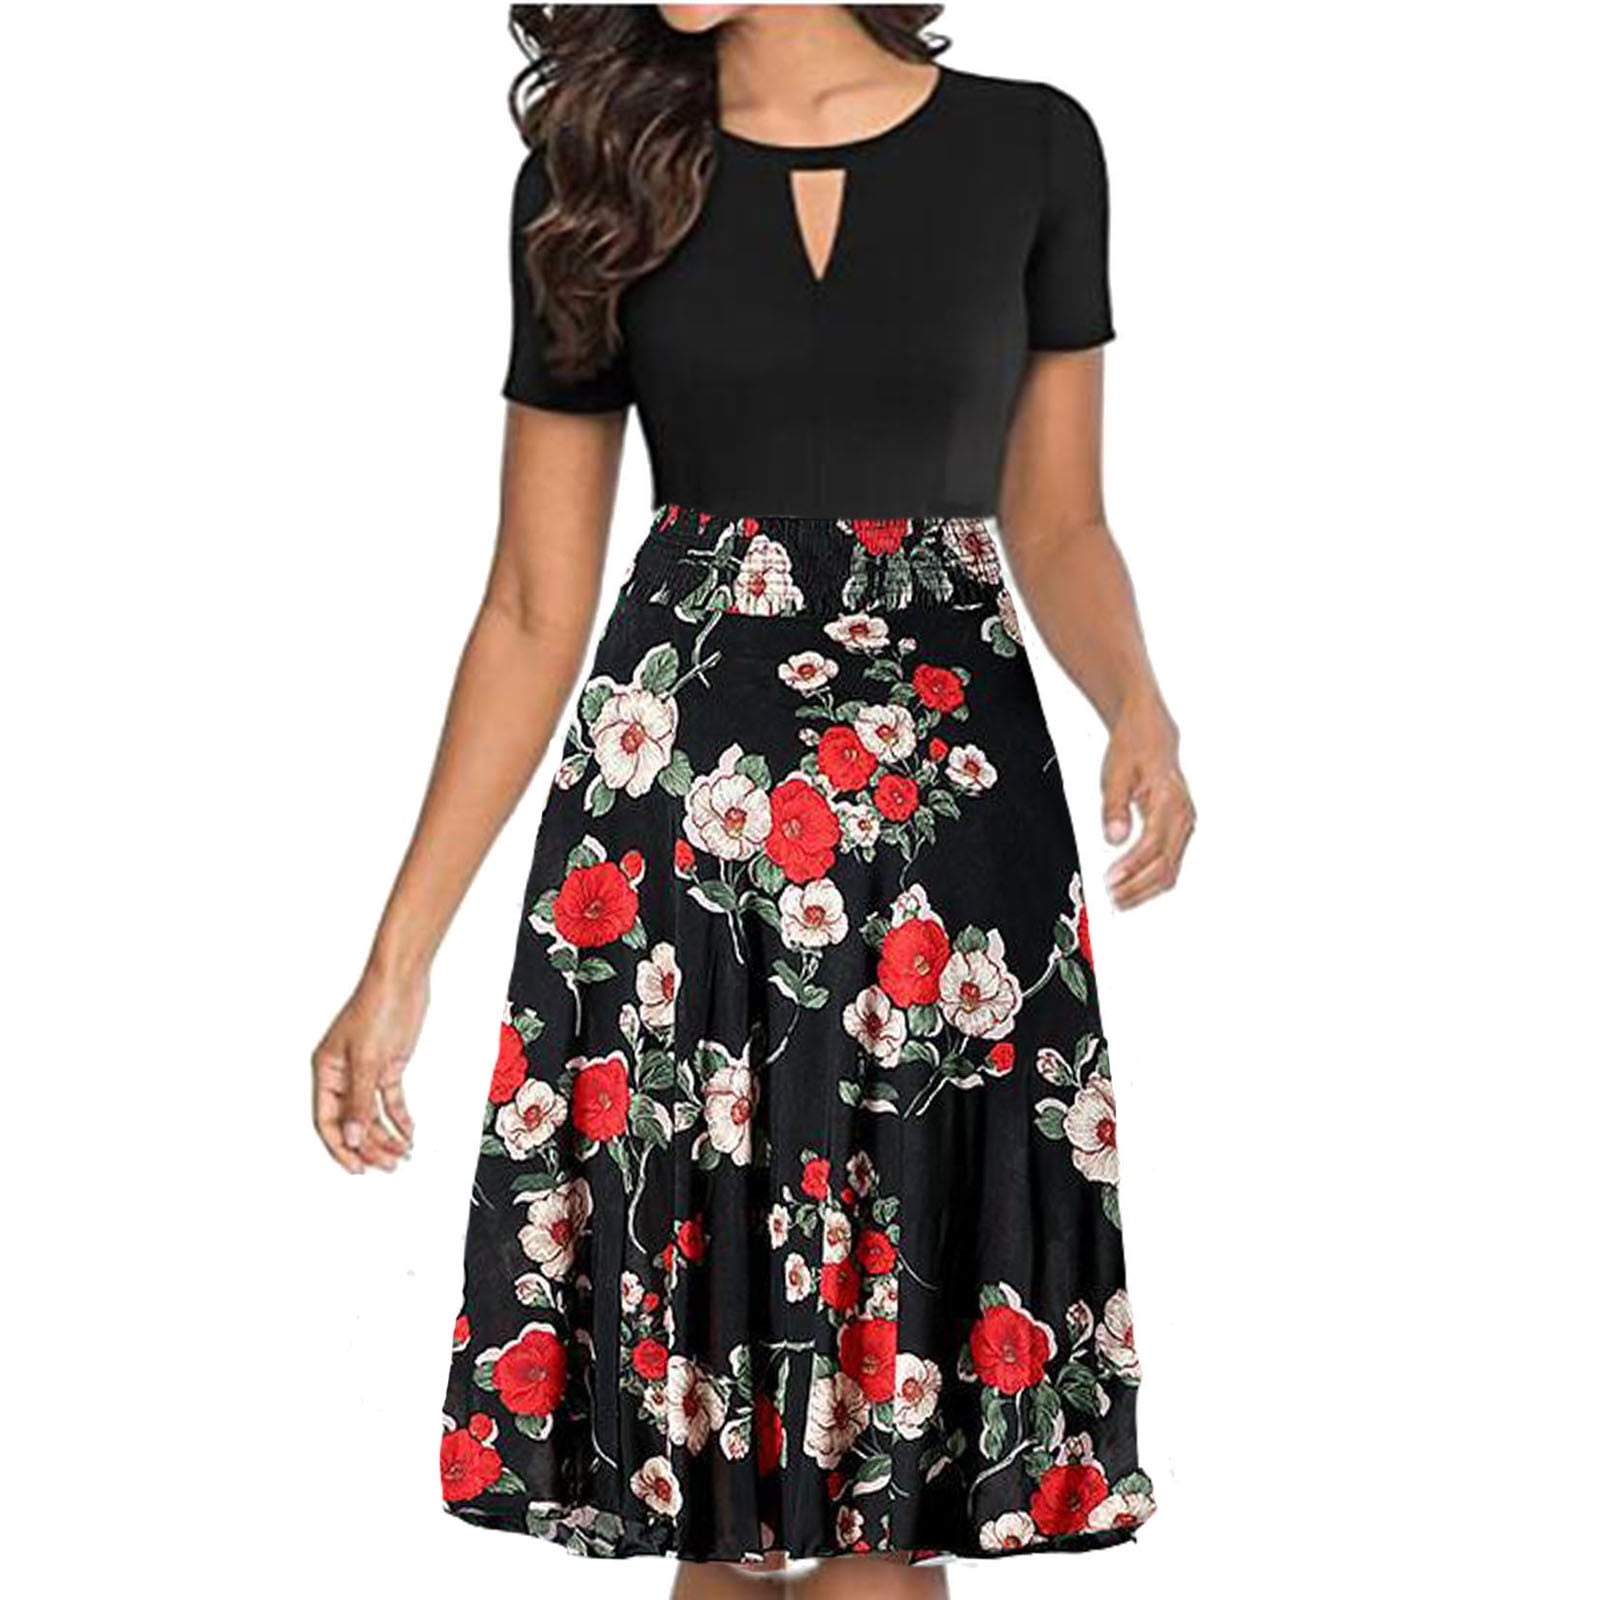 Cptfadh Women's Floral Printed High Waist Pleated A-Line Swing Skirt Dress  - Walmart.com